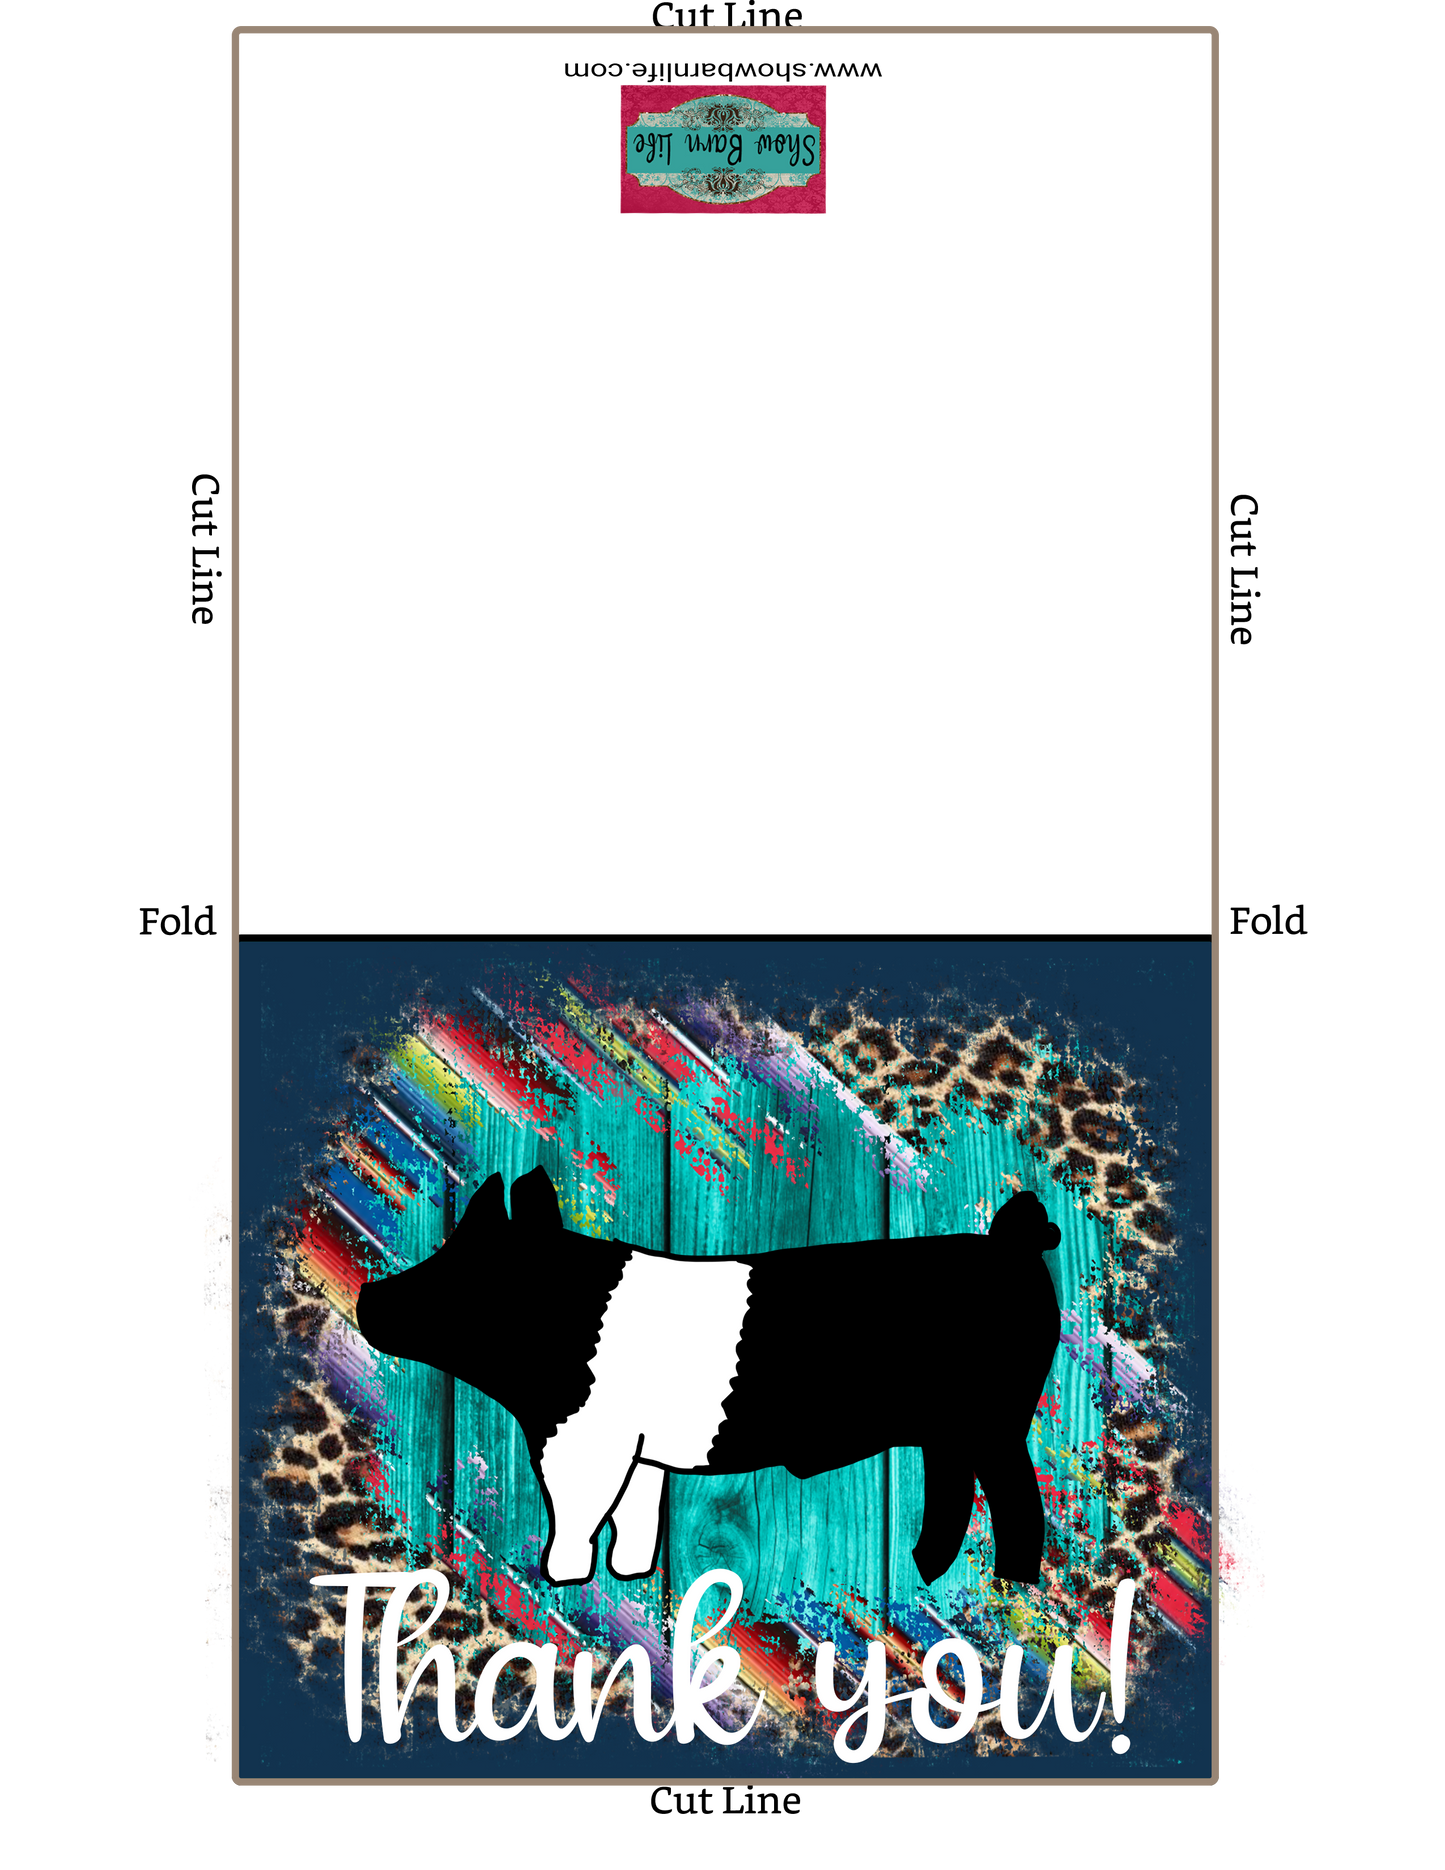 Tarjeta de agradecimiento de espectáculo de ganado - Mostrar cerdo - Plantilla de sobre de 5 x 7" - Guepardo sarape de madera verde azulado - Tarjetas digitales de cerdo